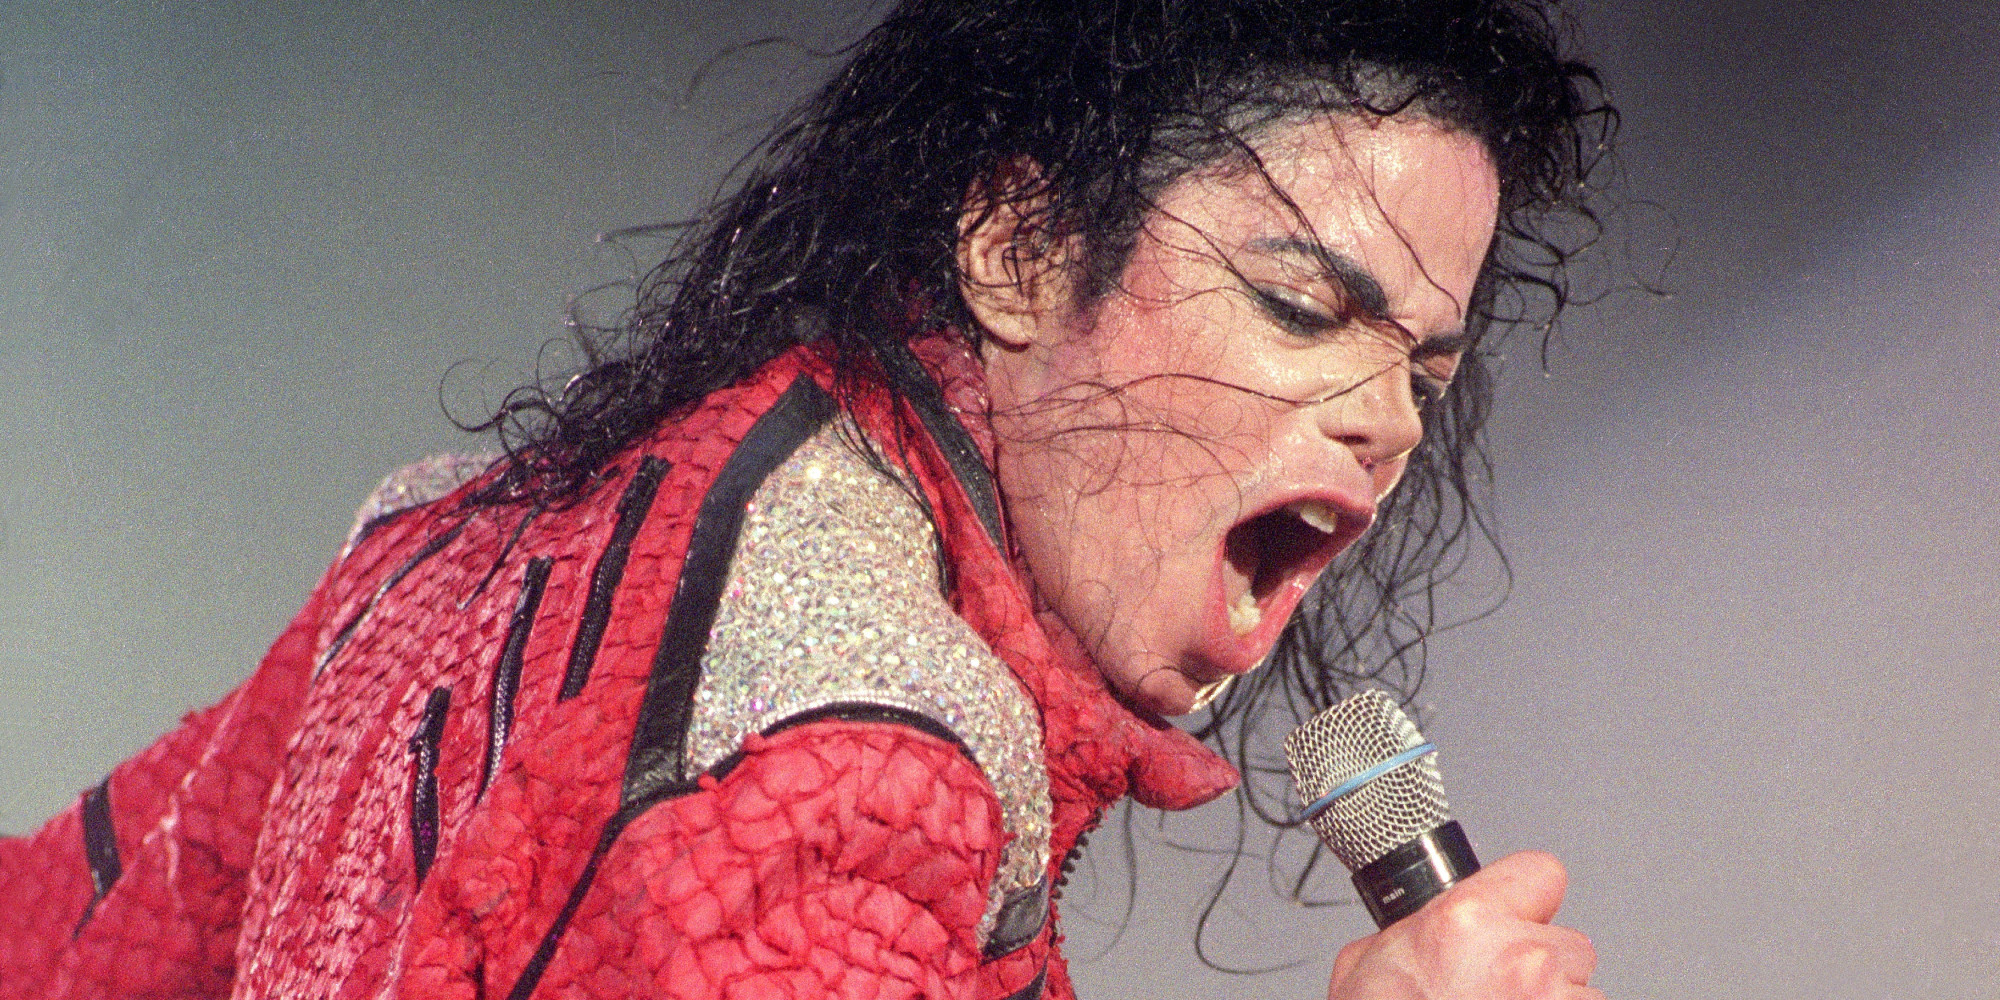 Michael Jackson : Une série sur les derniers jours de sa vie serait en préparation